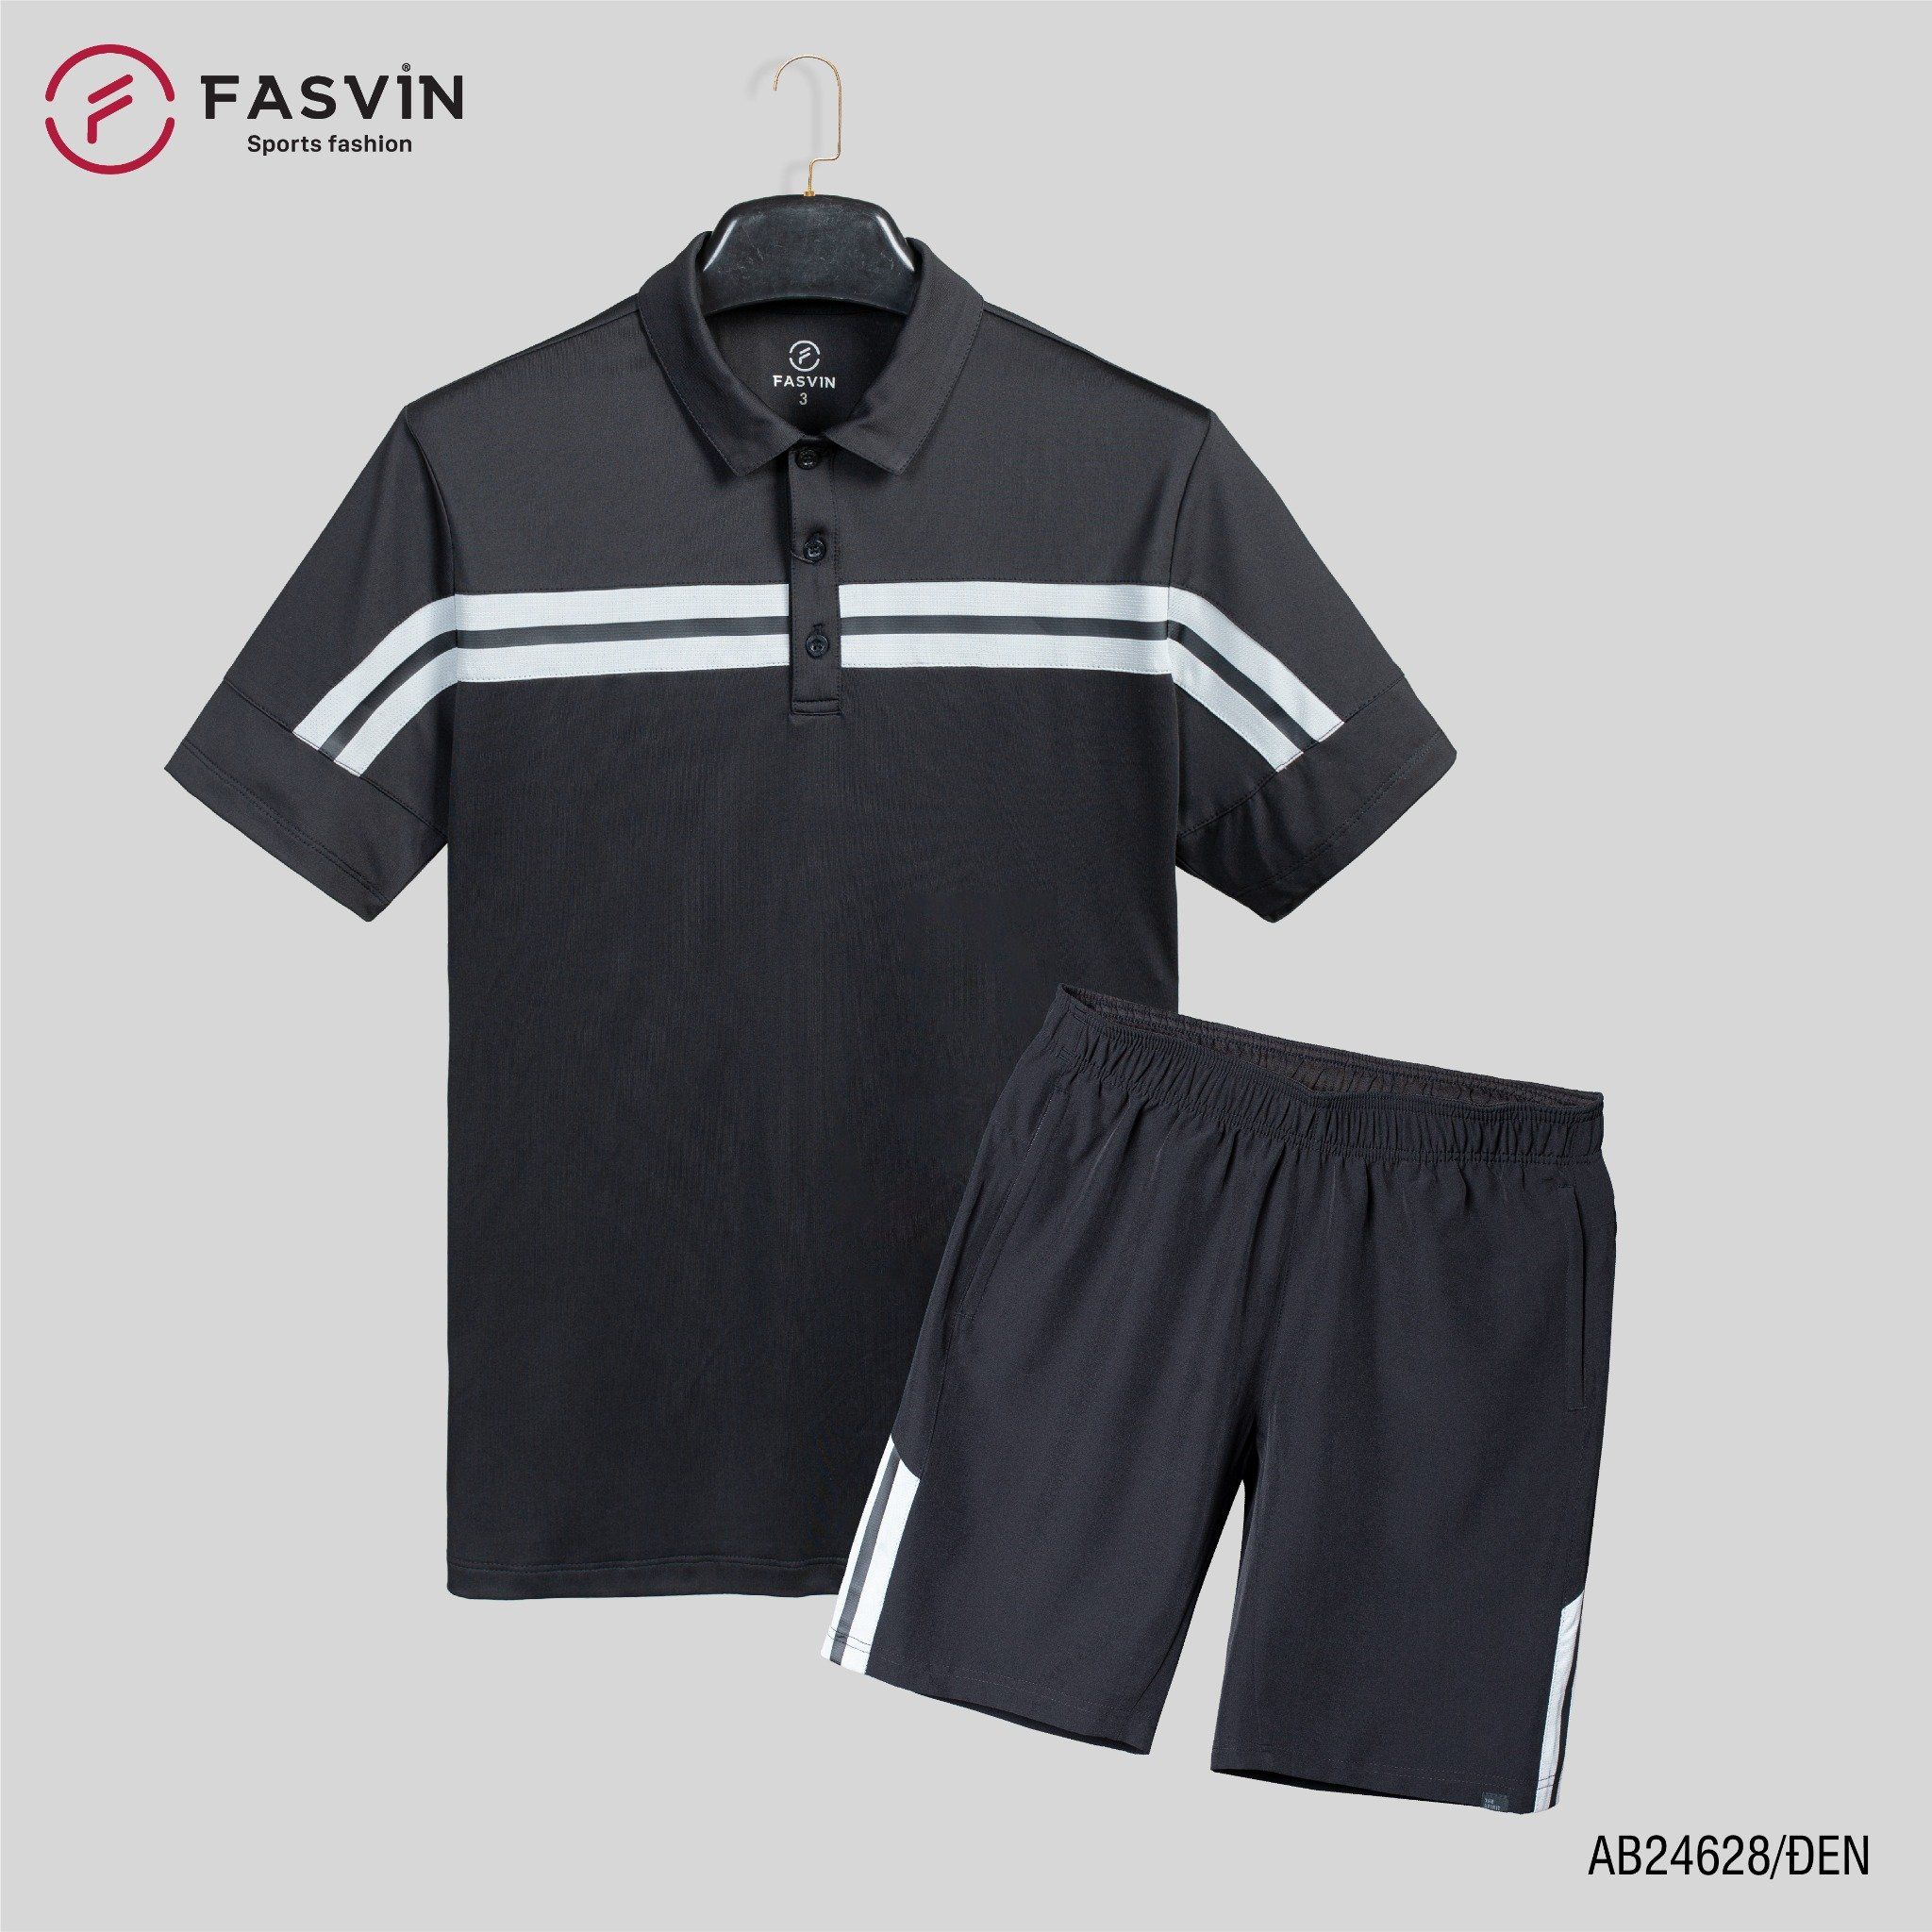  Bộ quần áo thể thao nam FASVIN AB24628 chất vải mềm nhẹ co giãn thoải mái 